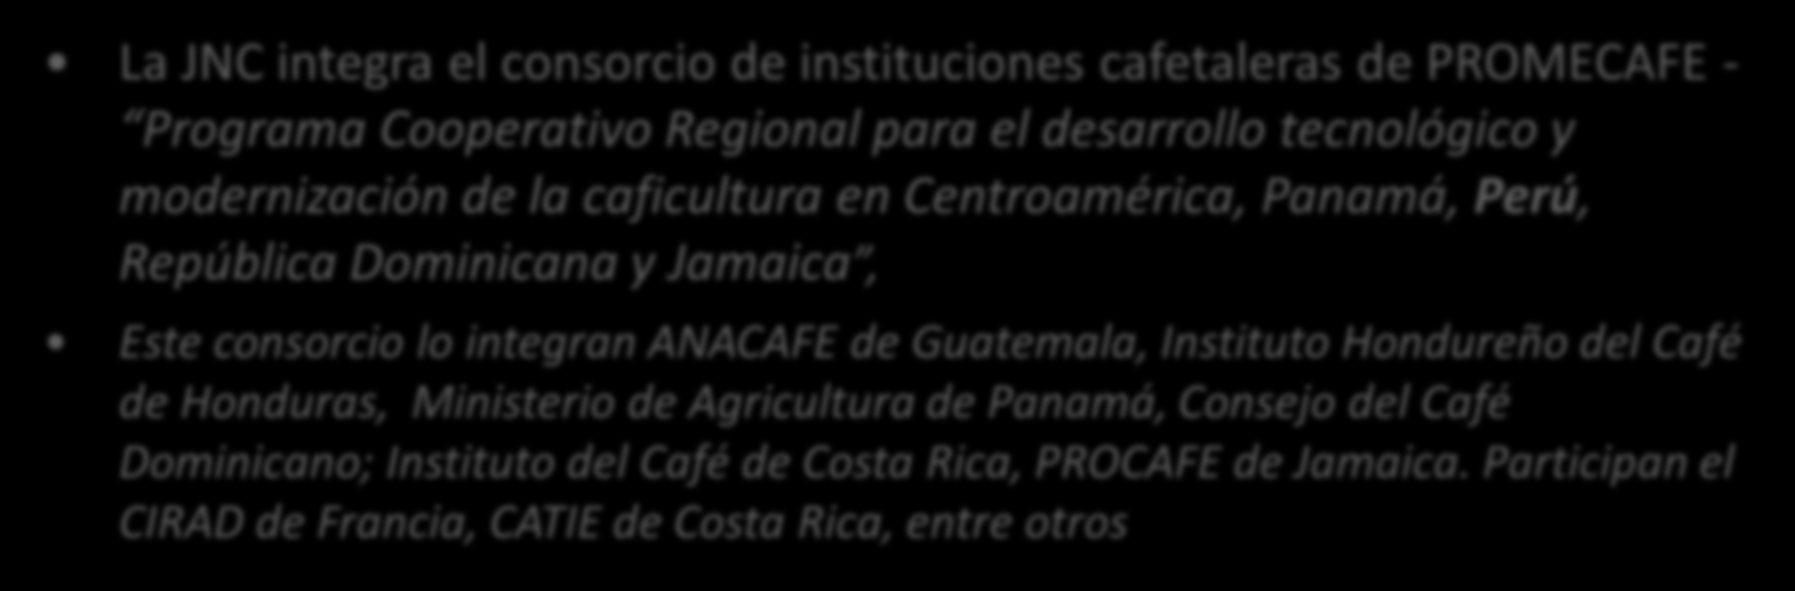 Articulación a Red Internacional de entidades especializadas en café La JNC integra el consorcio de instituciones cafetaleras de PROMECAFE - Programa Cooperativo Regional para